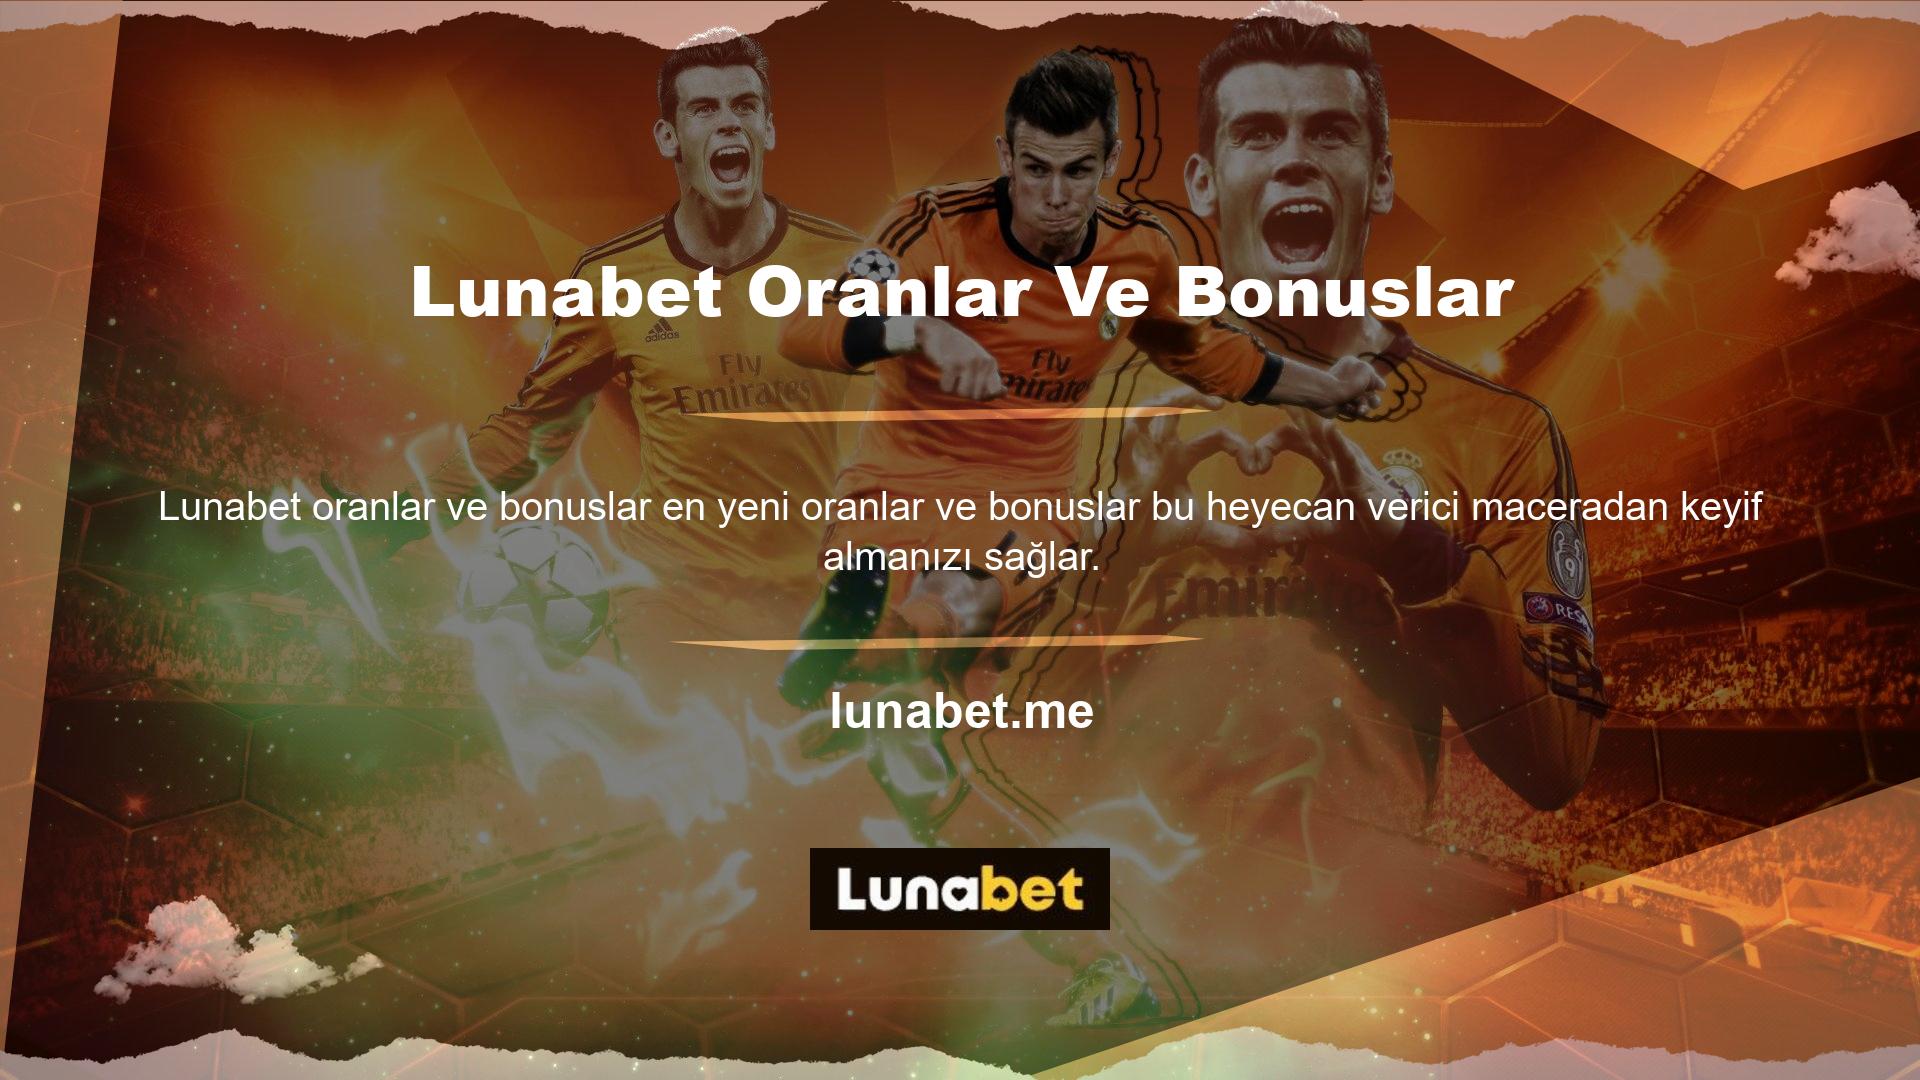 Lunabet, çevrimiçi bahis platformu aracılığıyla kullanıcılarına canlı ve spor bahis seçenekleri sunmaya devam ediyor